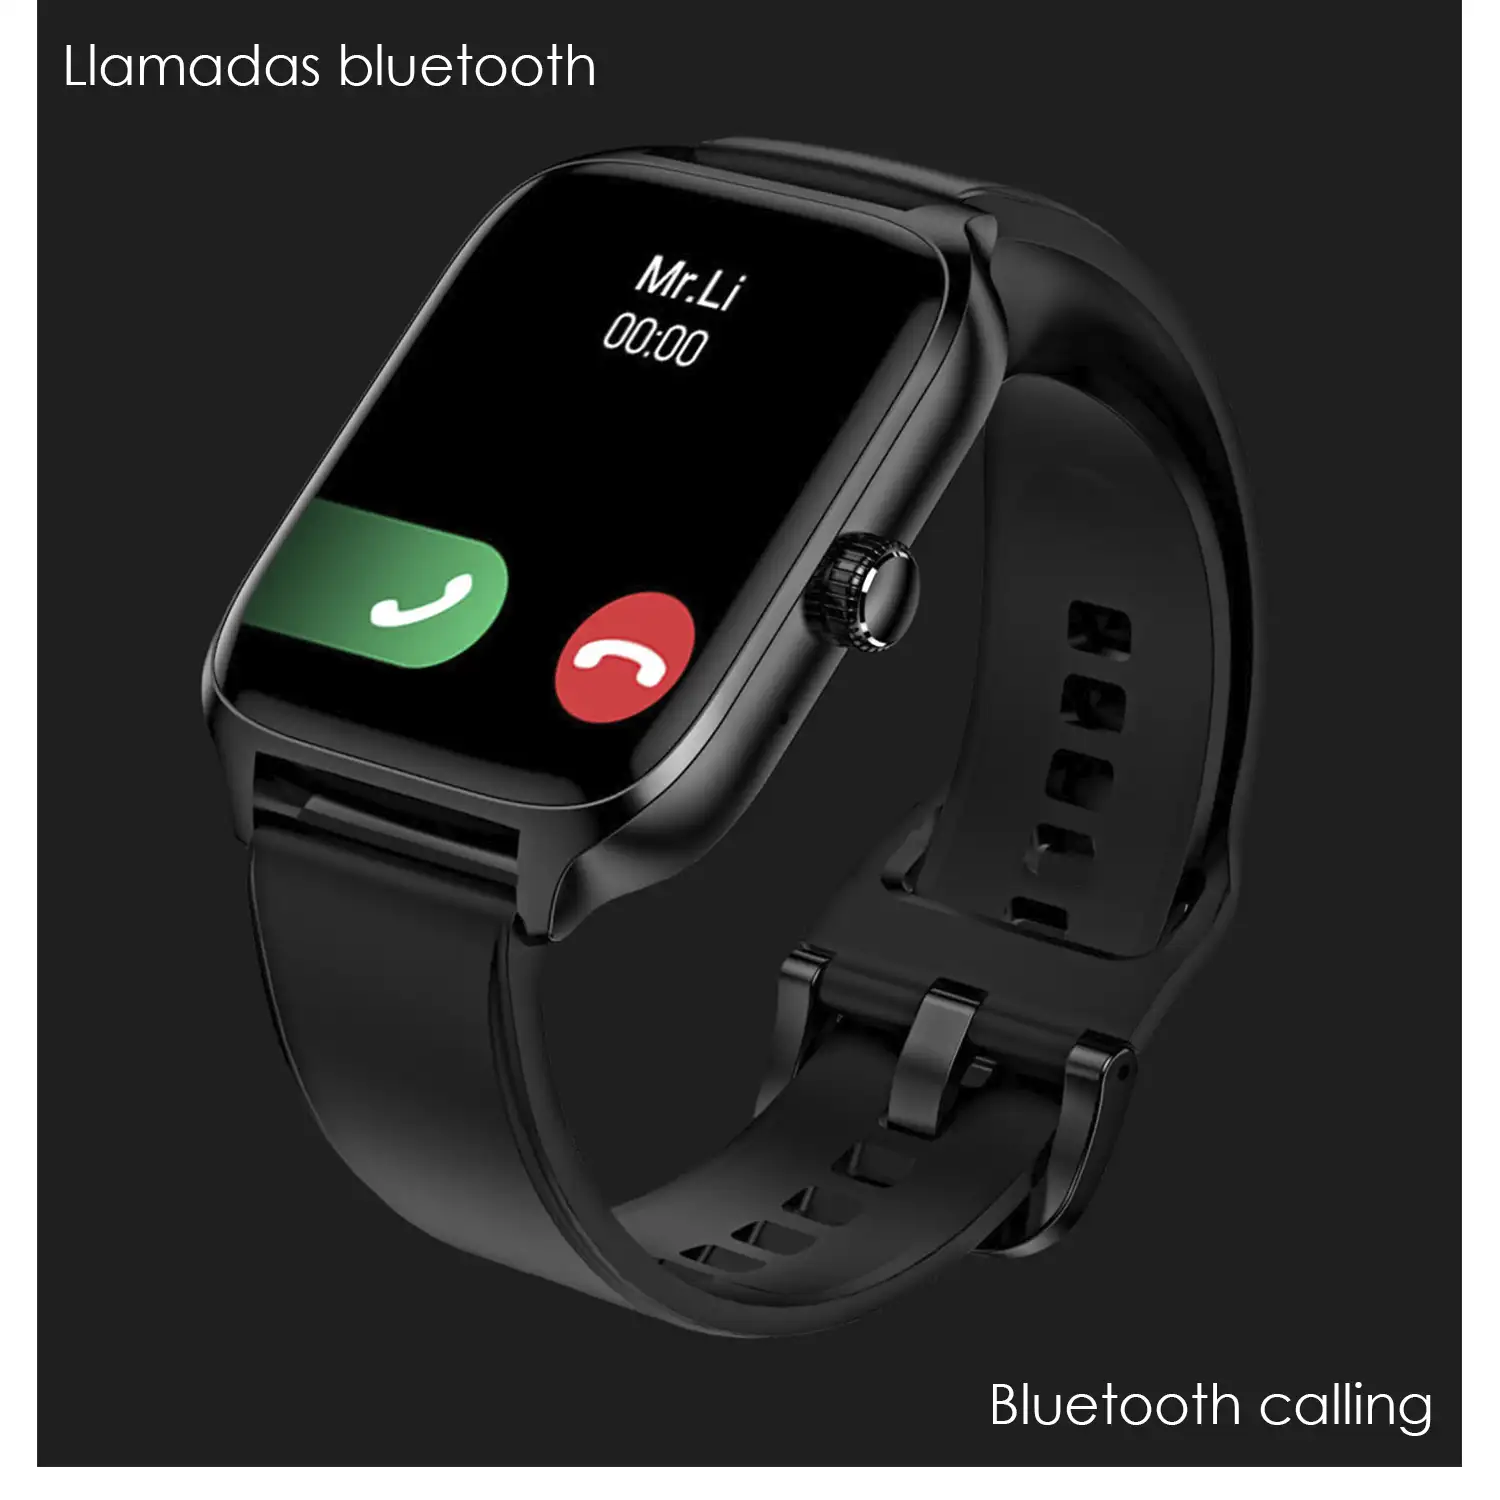 Smartwatch DT116 con monitor cardiaco, pantalla de acceso rápido, notificaciones, acceso asistente de voz.